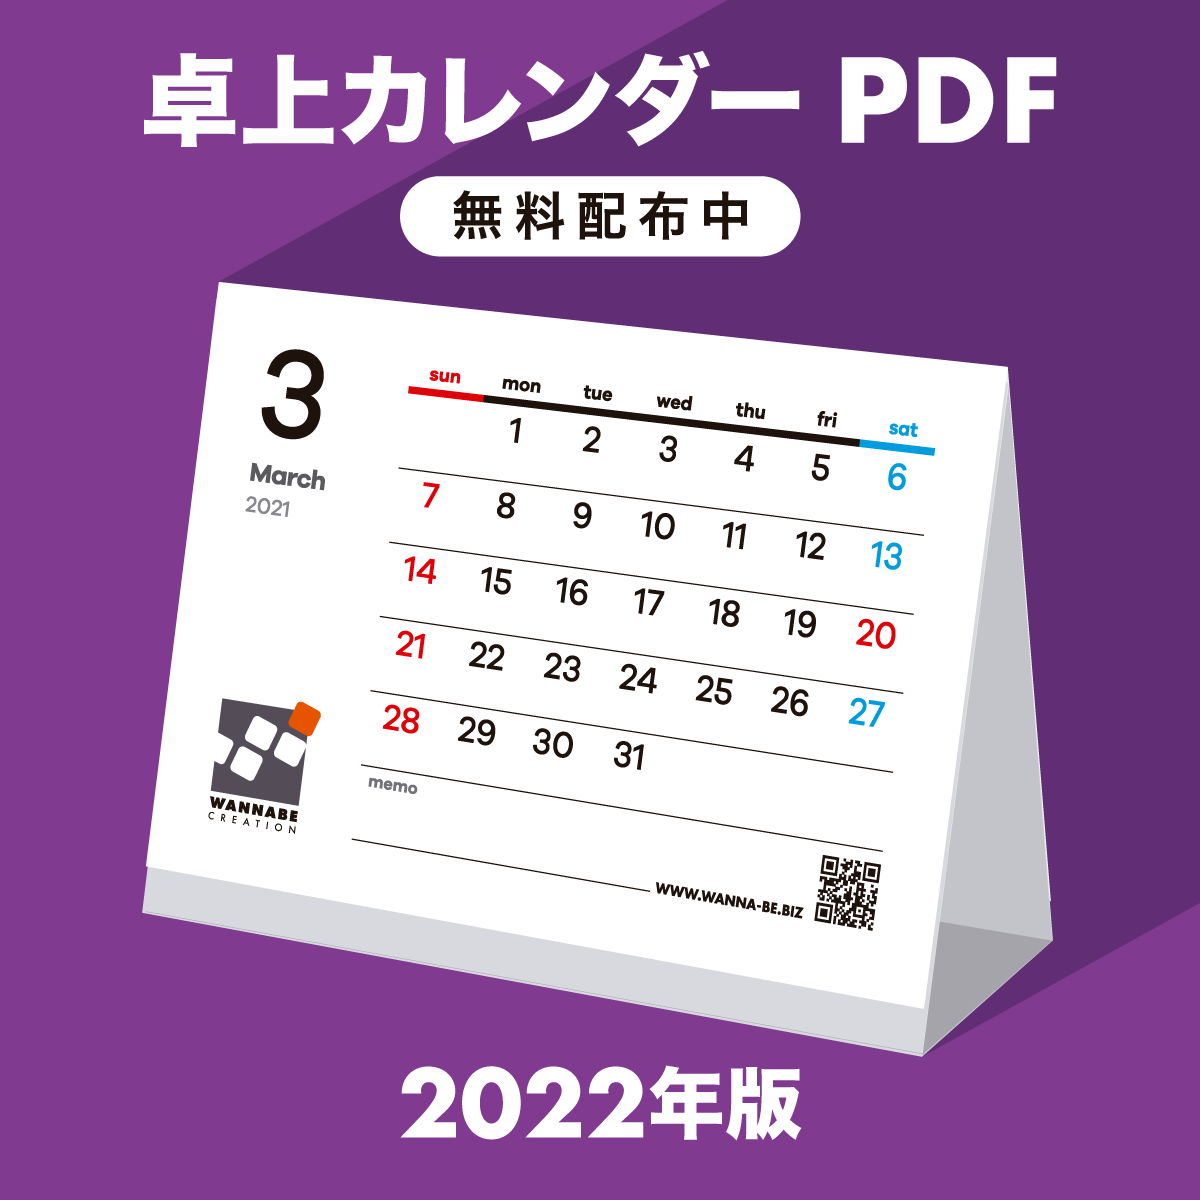 2022年 卓上カレンダーPDF 無料ダウンロード